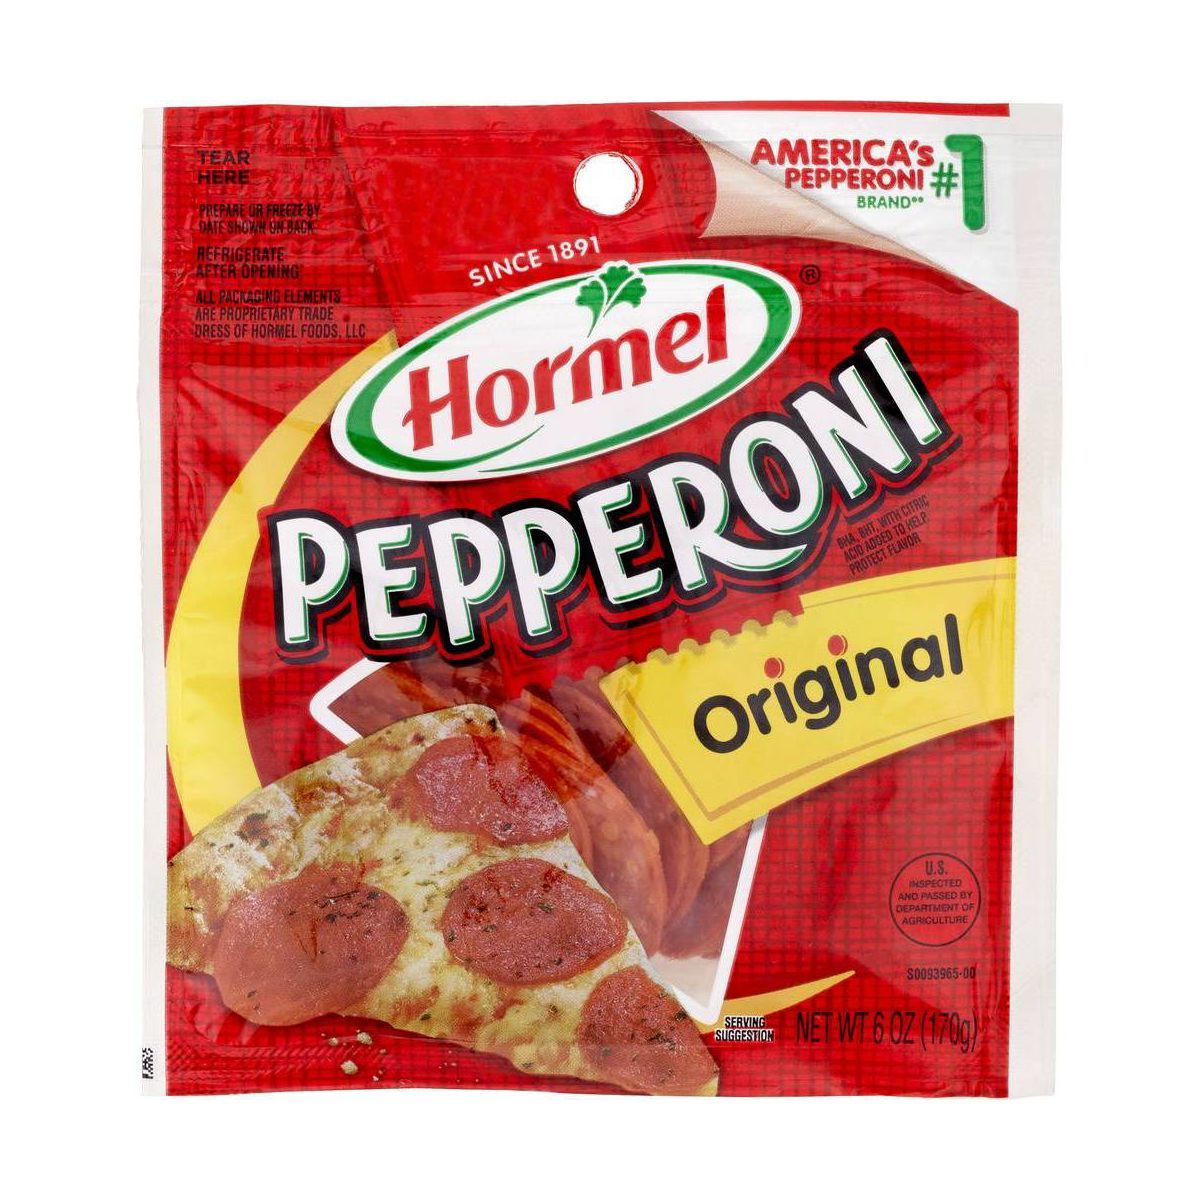 Hormel Original Pepperoni Slices - 6oz | Target